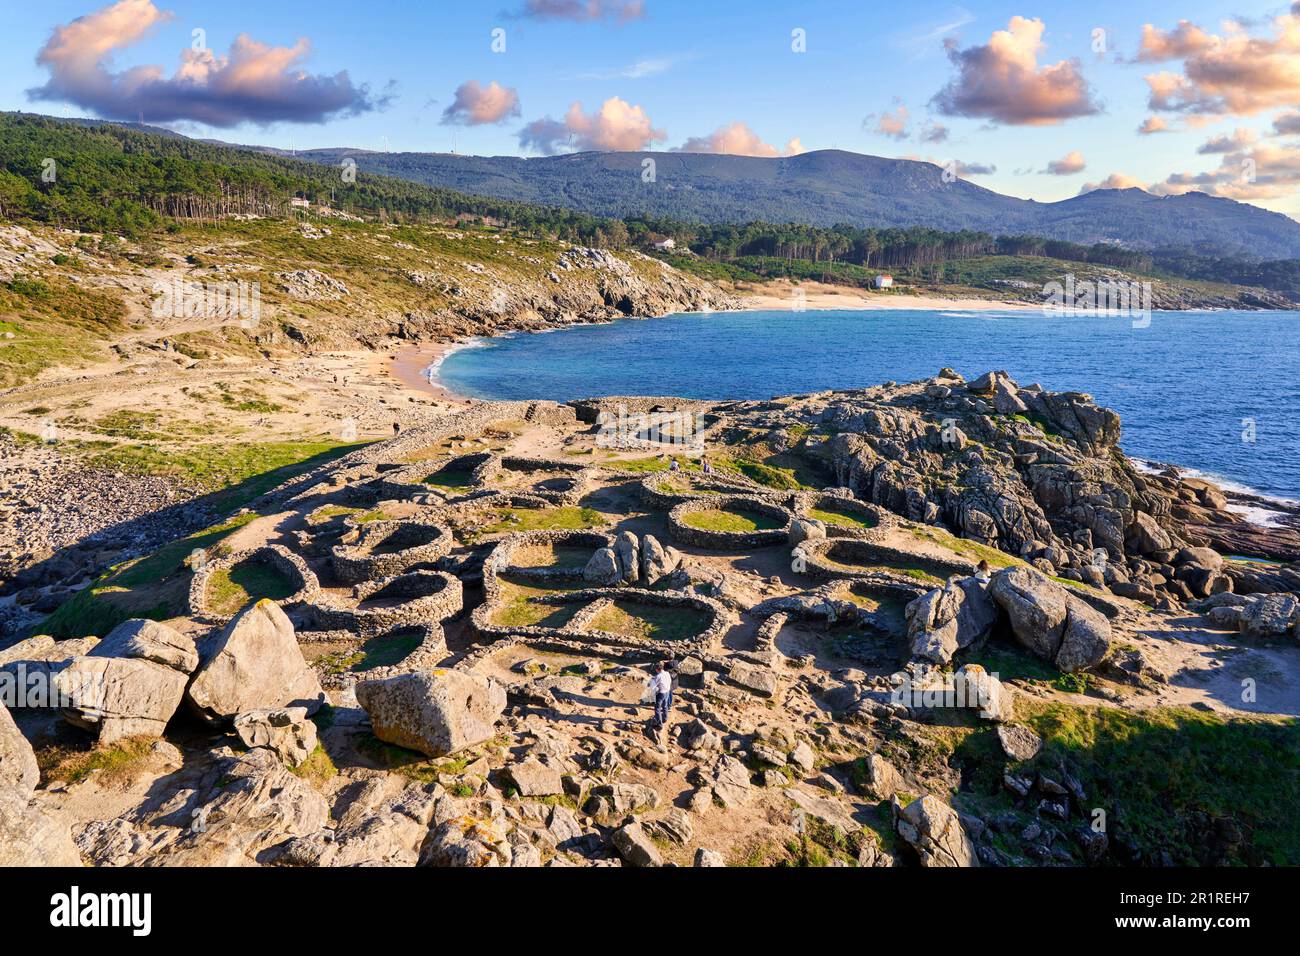 Castro de Baroña, Porto do son, Ria de Muros y Noya, A Coruña, Galice, Espagne. La colonie la plus septentrionale de Galice, en Espagne, Castro de Baroña, est Banque D'Images